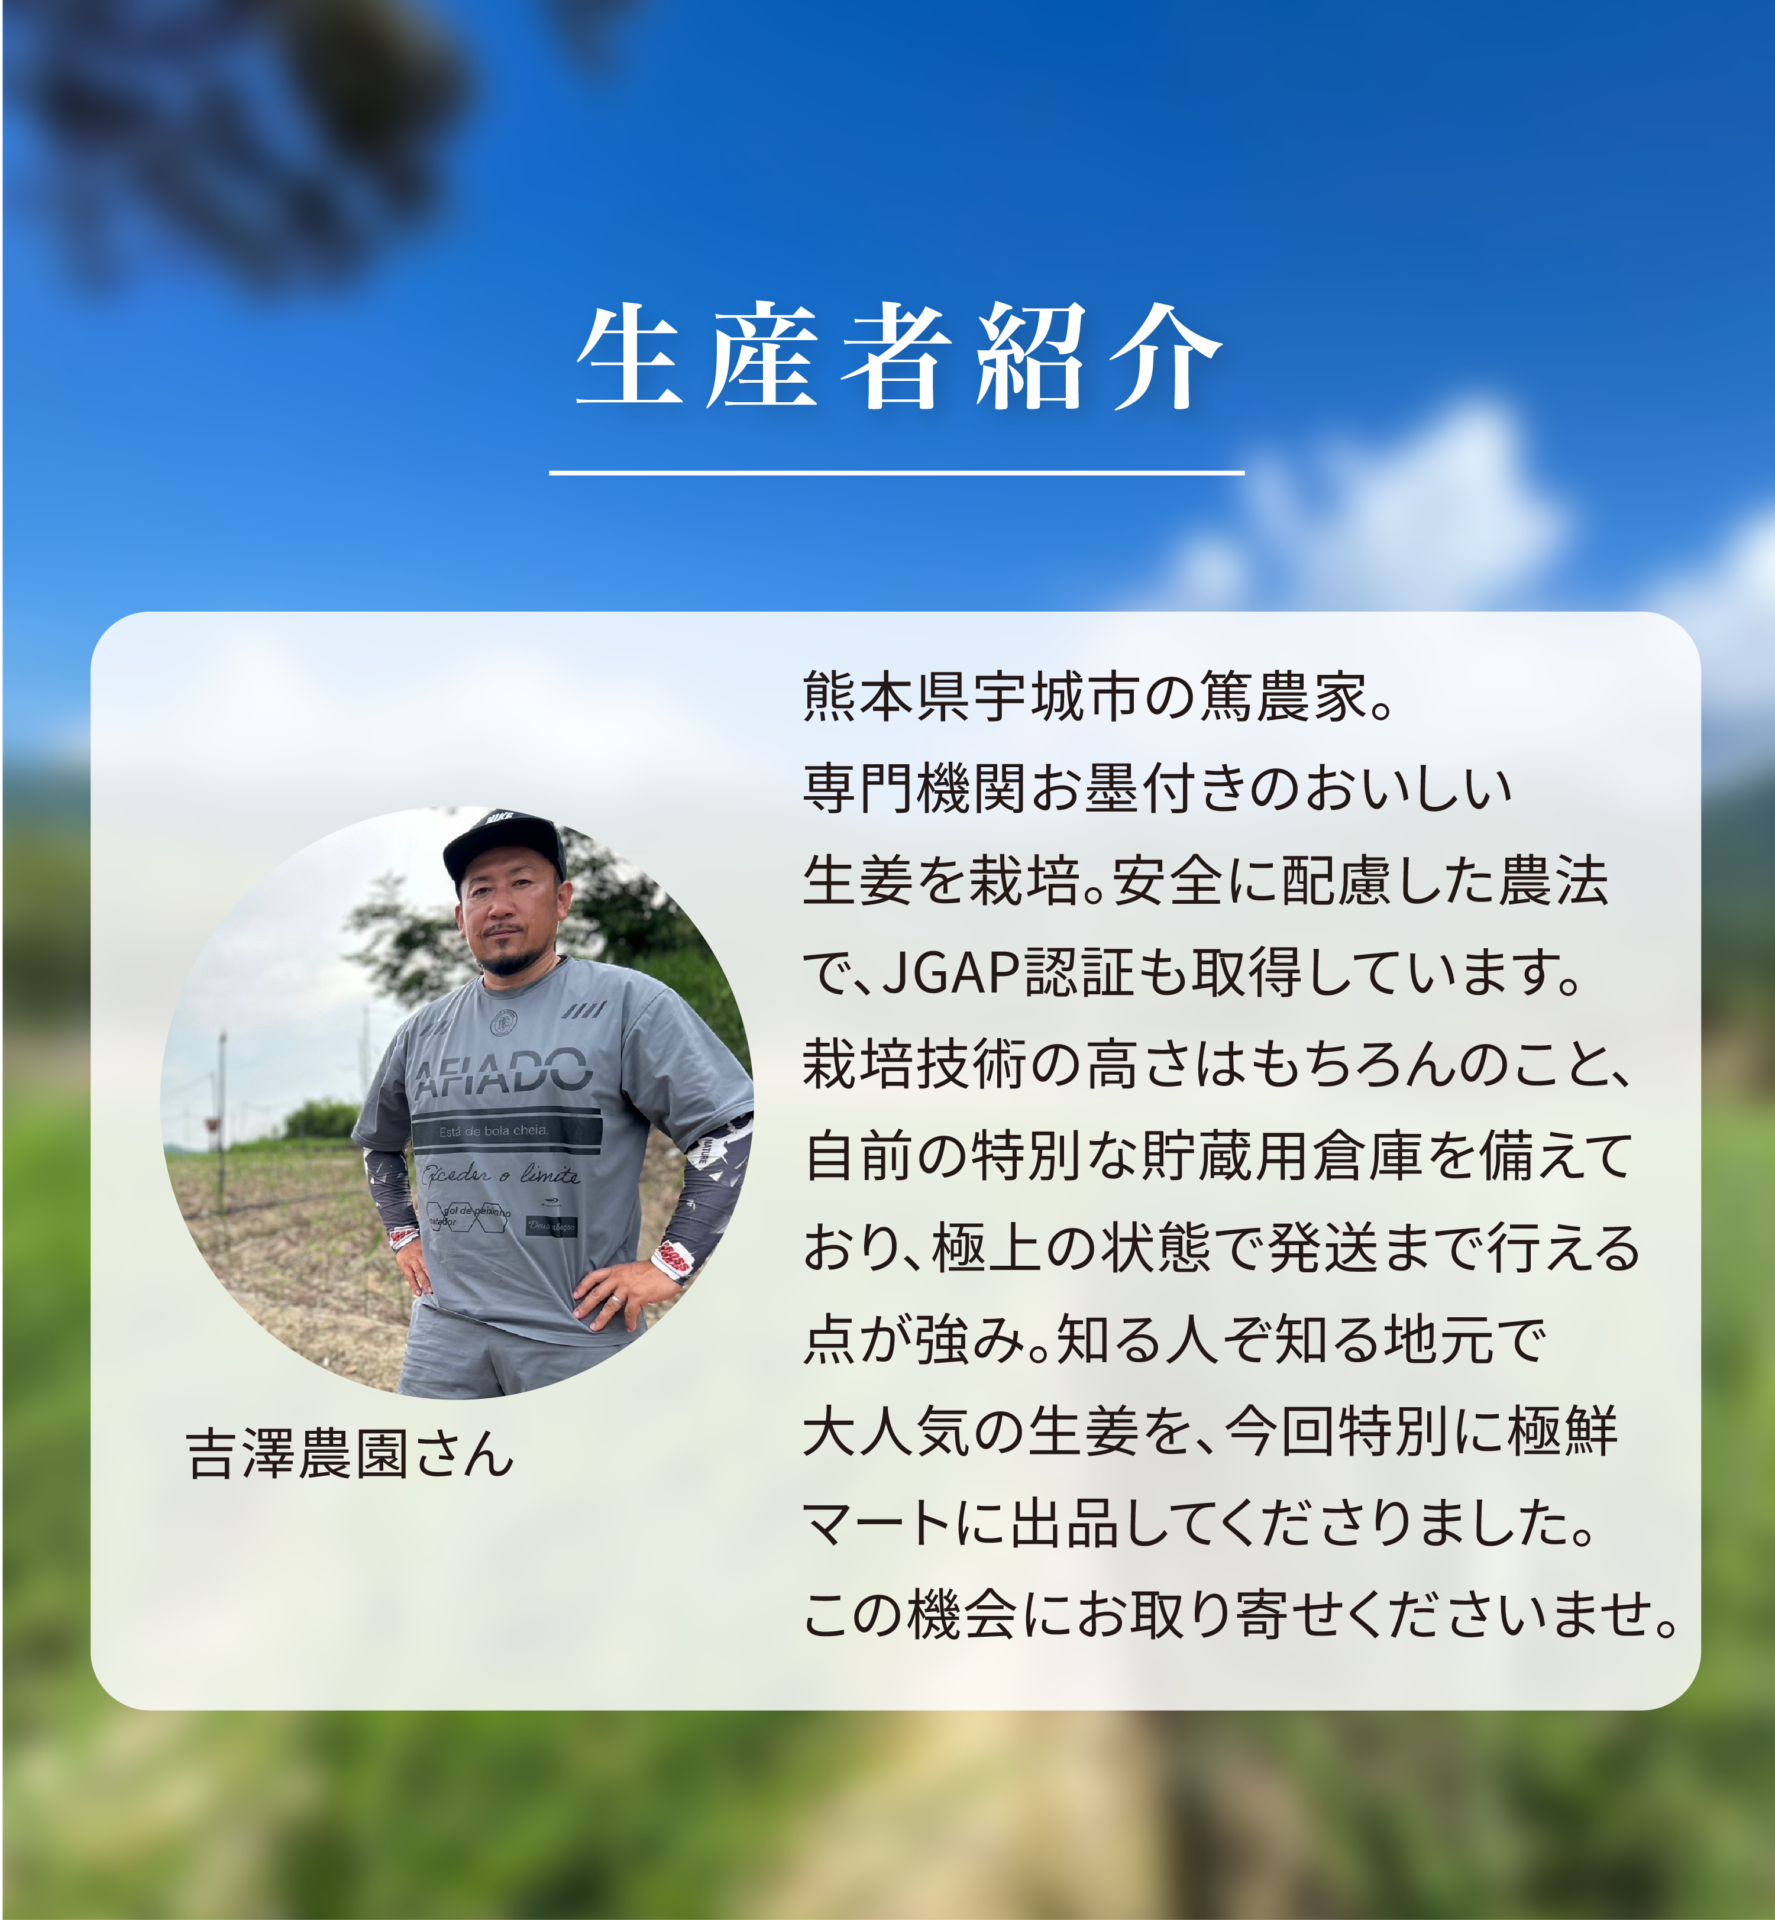 生産者紹介 吉澤農園さん 熊本県宇城市の篤農家。専門機関お墨付きのおいしい生姜を栽培。安全に配慮した農法で、JGAP認証も取得しています。栽培技術の高さはもちろんのこと、自前の特別な貯蔵用倉庫を備えており、極上の状態で発送まで行える点が強み。知る人ぞ知る地元で大人気の生姜を、今回特別に極鮮マートに出品してくださりました。この機会にお取り寄せくださいませ。